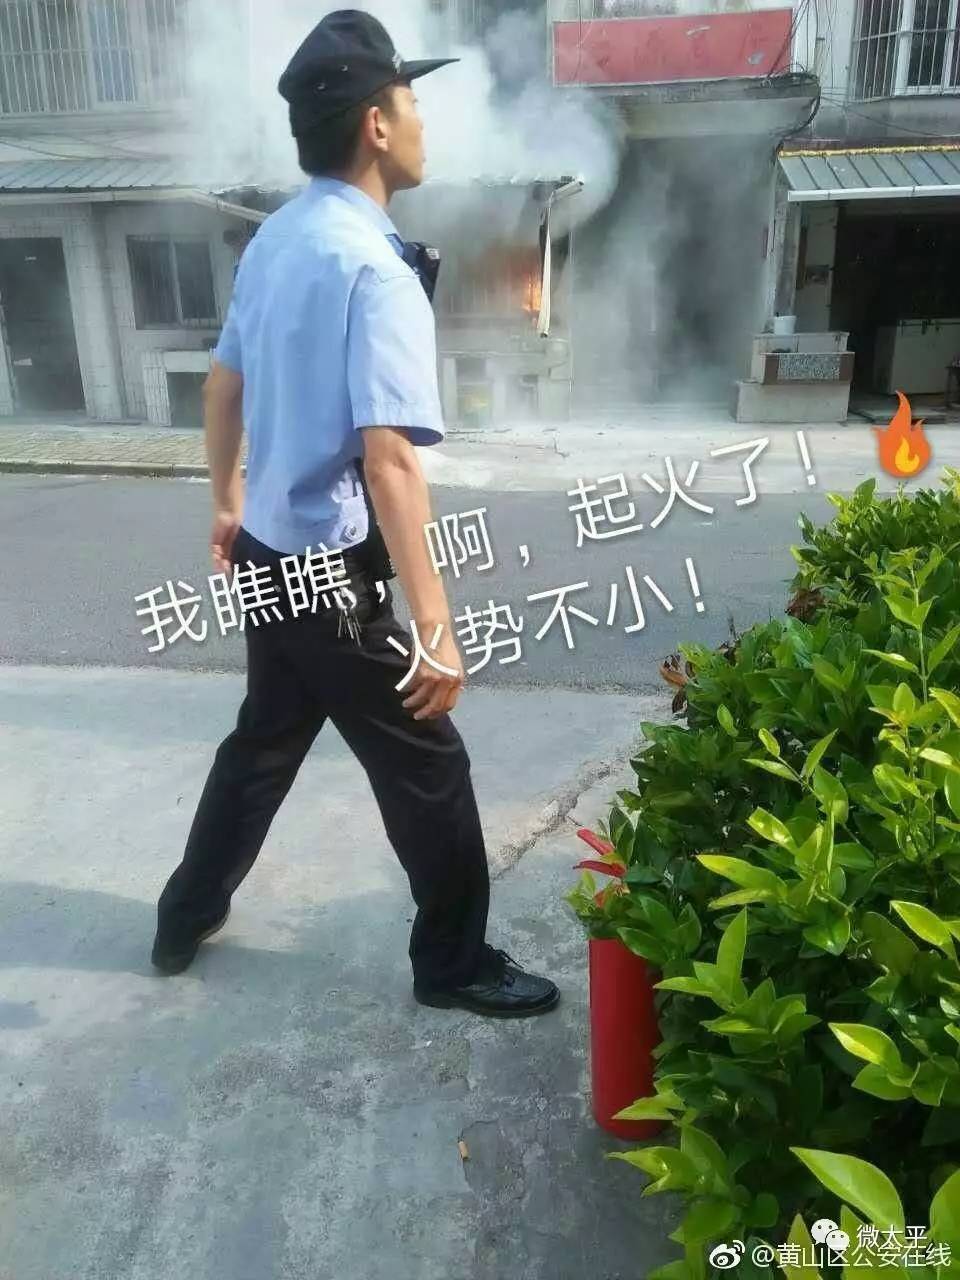 甘棠镇某小区居民厨房着火,警察蜀黍紧急救援扑灭!